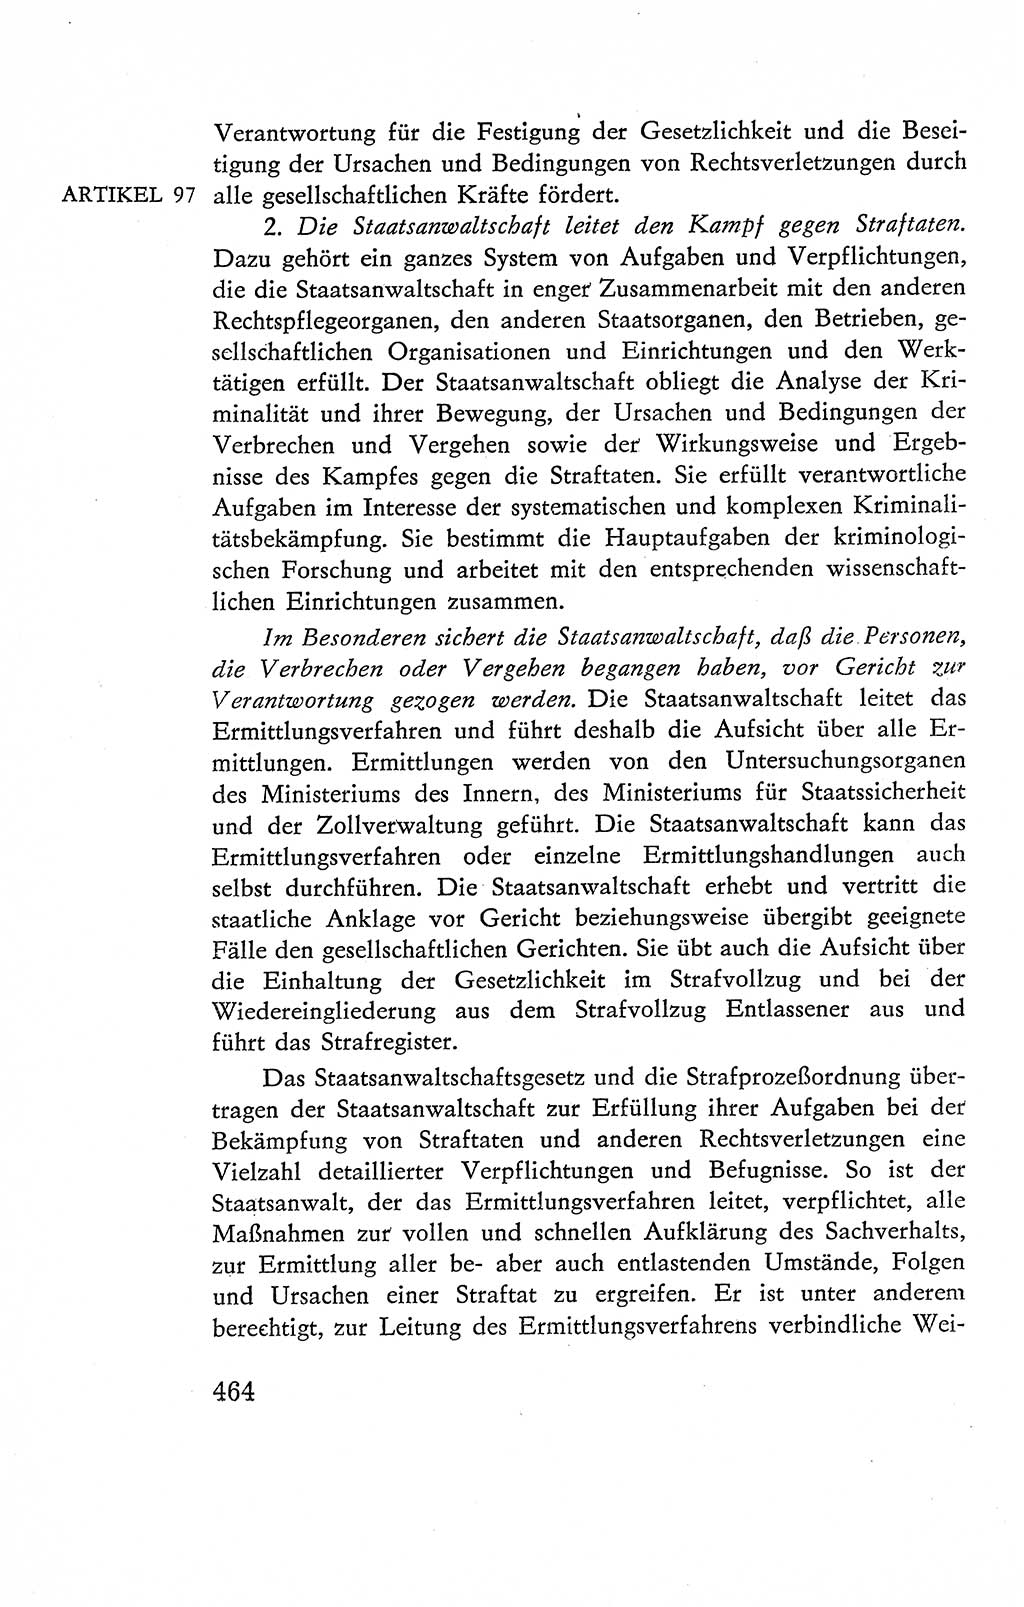 Verfassung der Deutschen Demokratischen Republik (DDR), Dokumente, Kommentar 1969, Band 2, Seite 464 (Verf. DDR Dok. Komm. 1969, Bd. 2, S. 464)